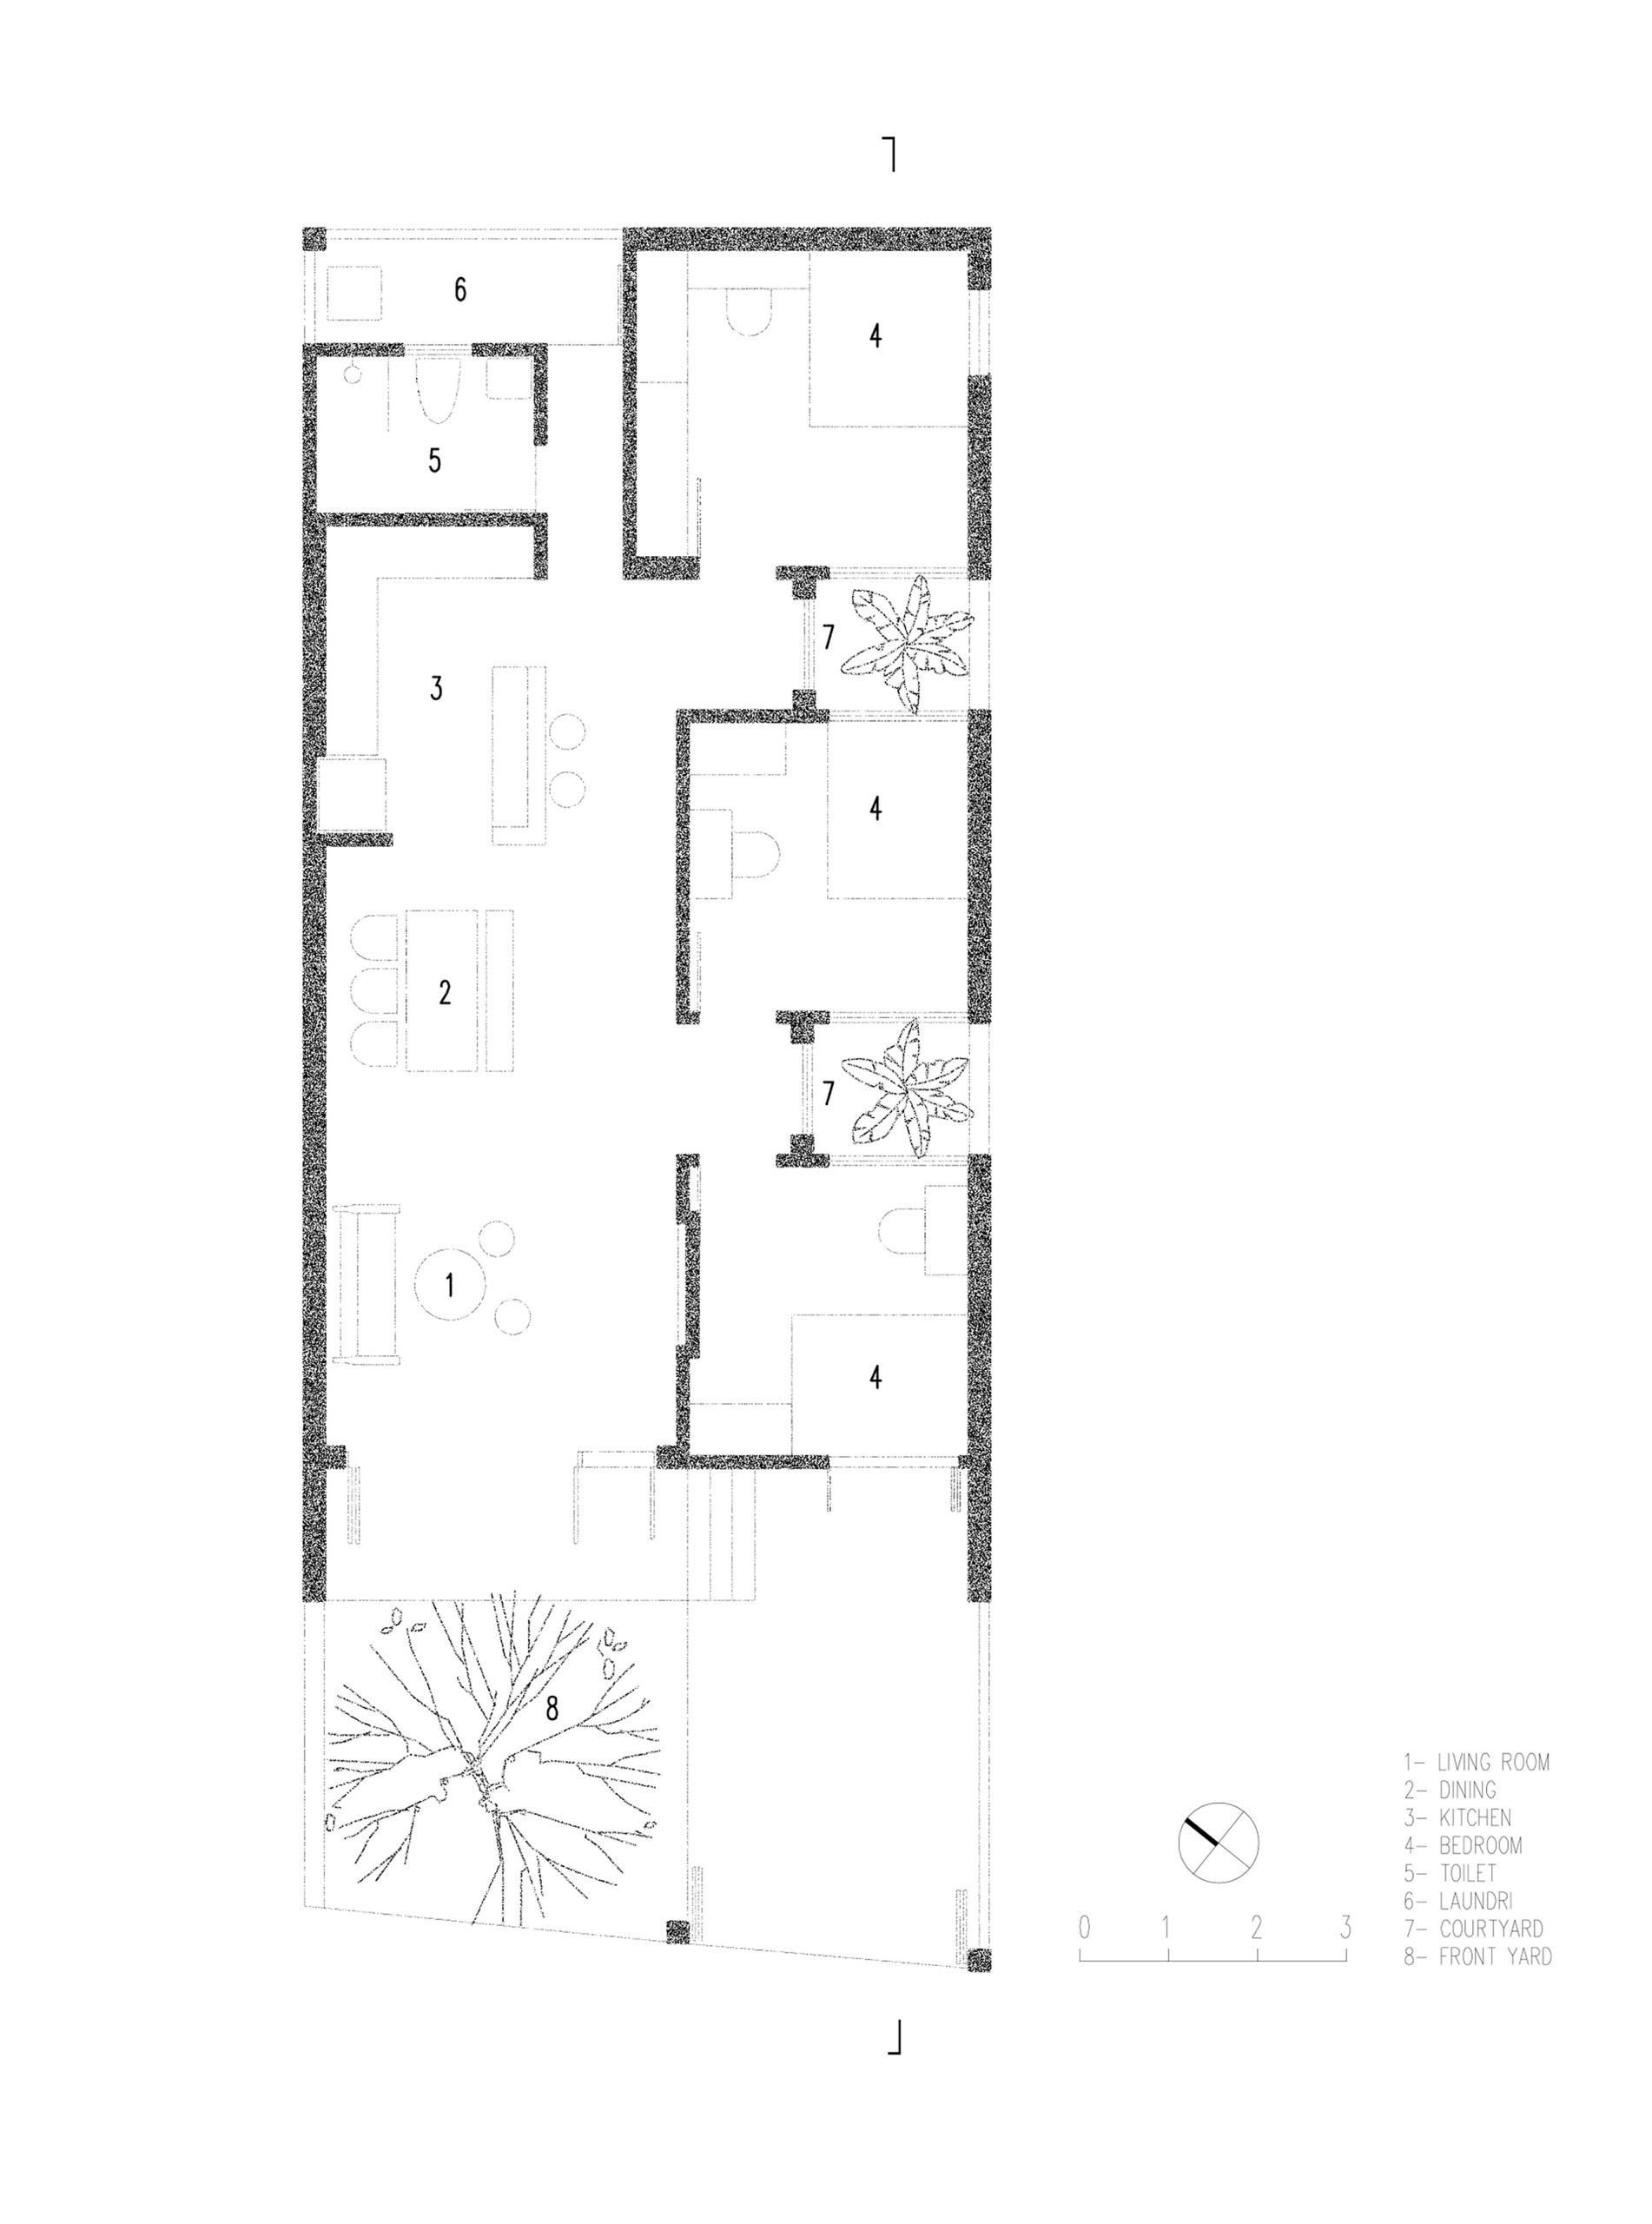 22.plan  scaled - “3gian” đương đại | Nguyen Khac Phuoc Architects